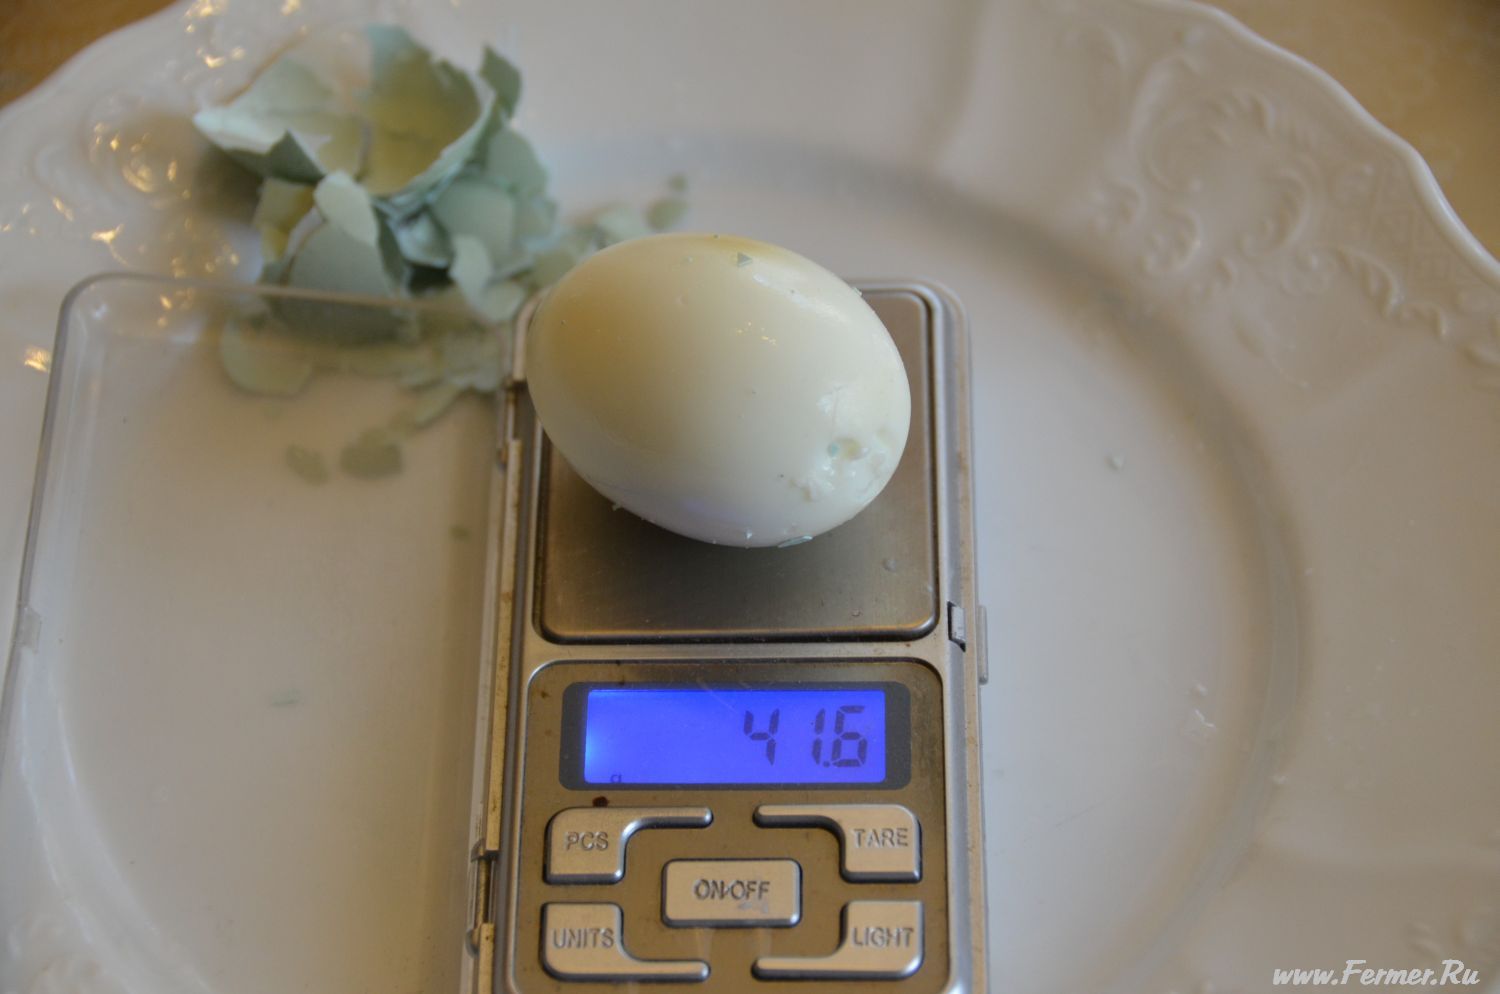 Курицы 1 грамм. Вес 1 яйца куриного вареного. Яйцо куриное вес 1 шт без скорлупы. Яйцо вареное вес 1 шт без скорлупы. Вес 1 вареного яйца без скорлупы.